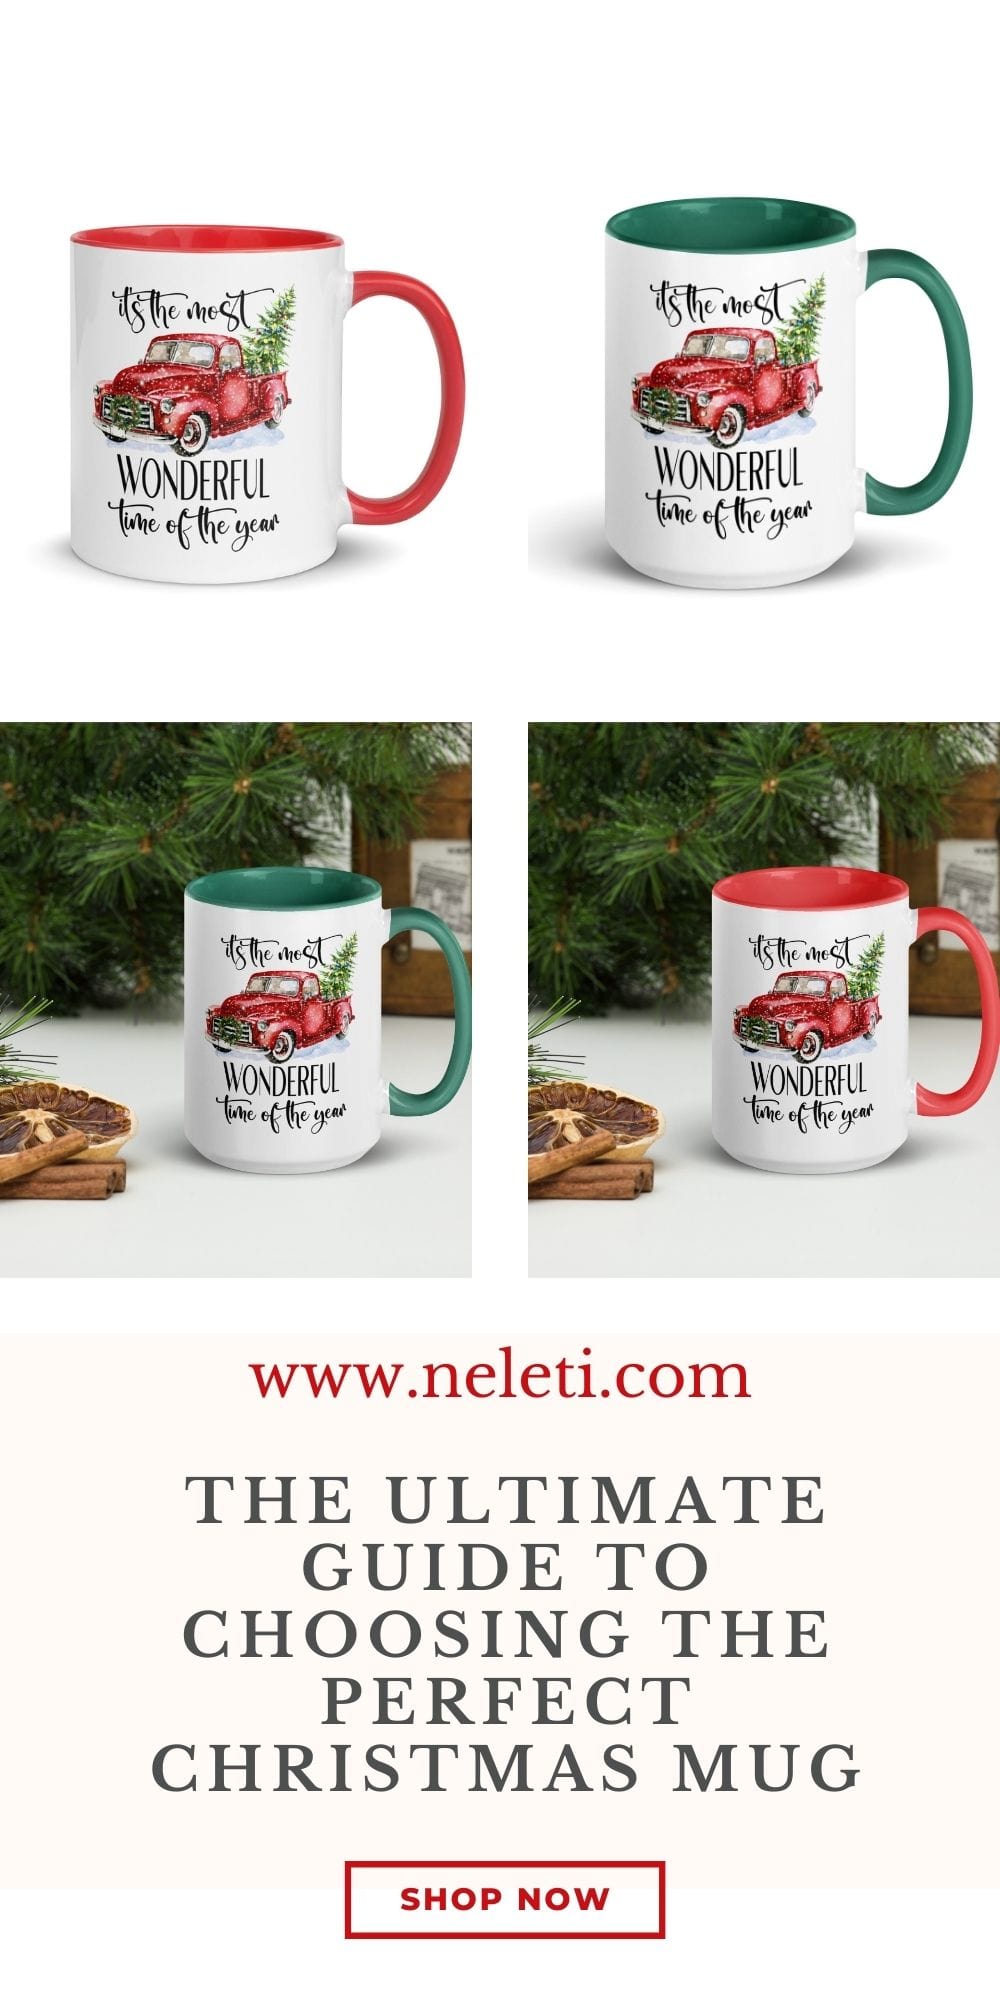 neleti.com-christmas-mugs